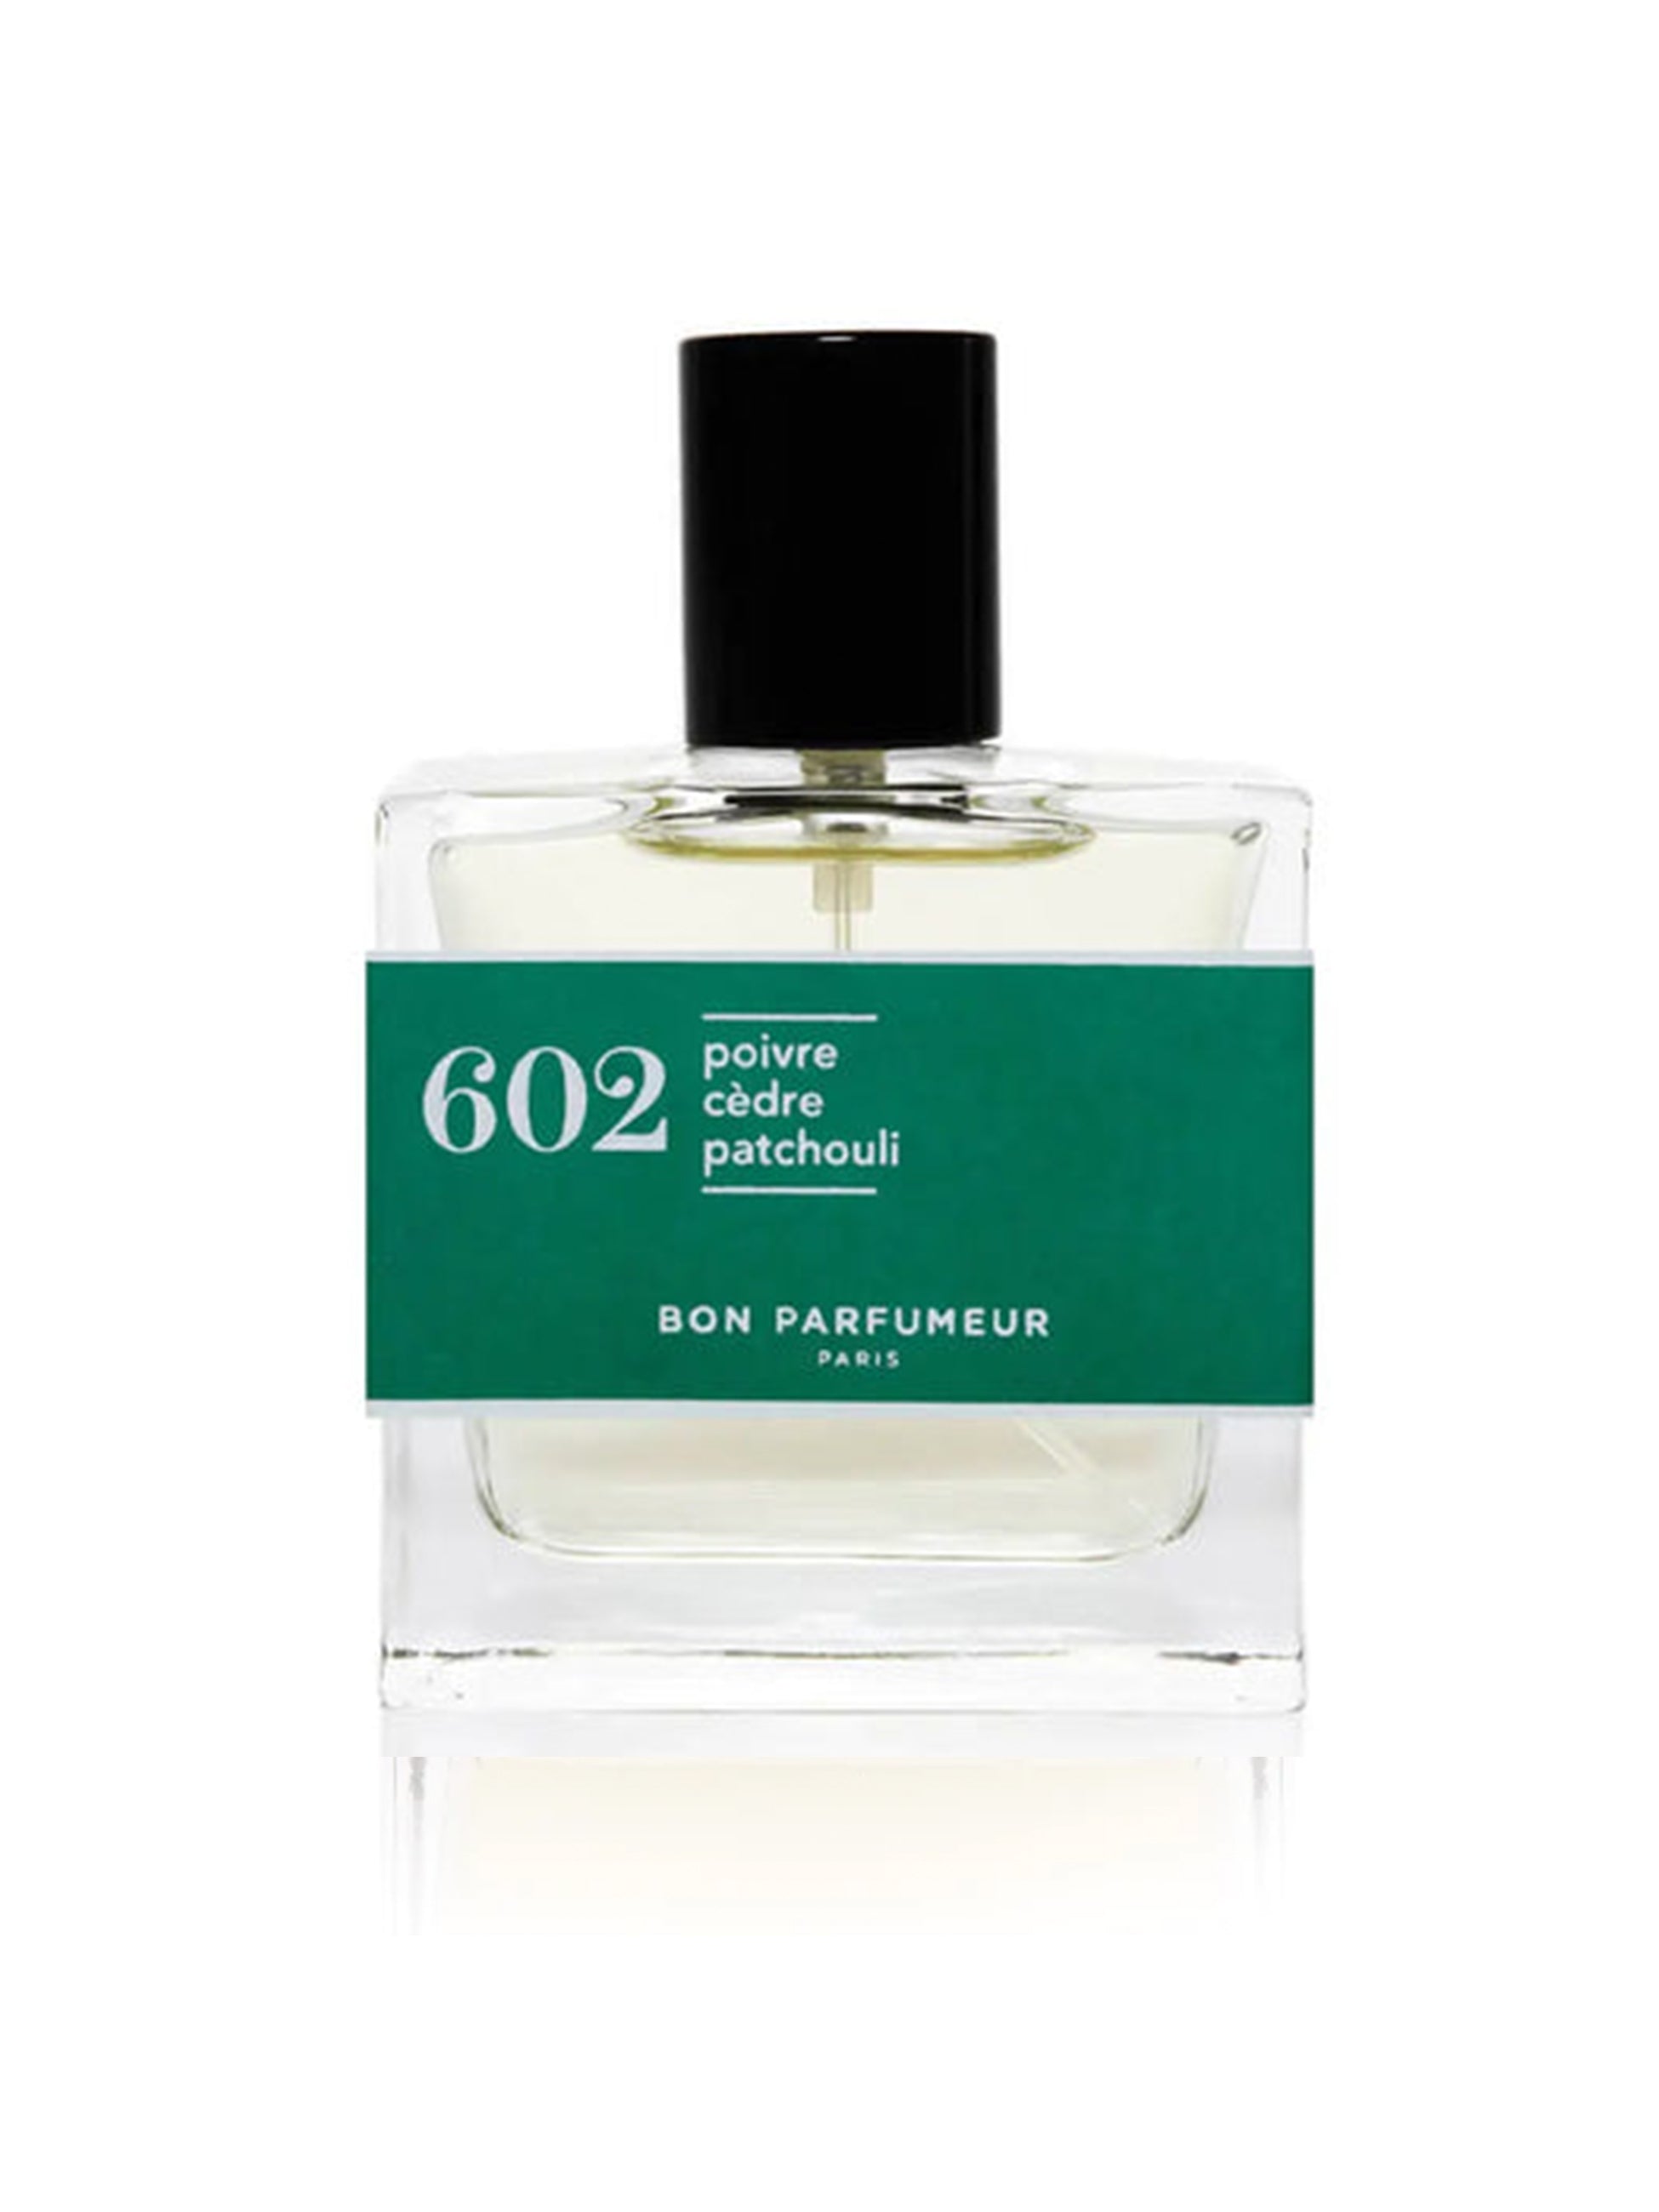 Bon Parfum 602